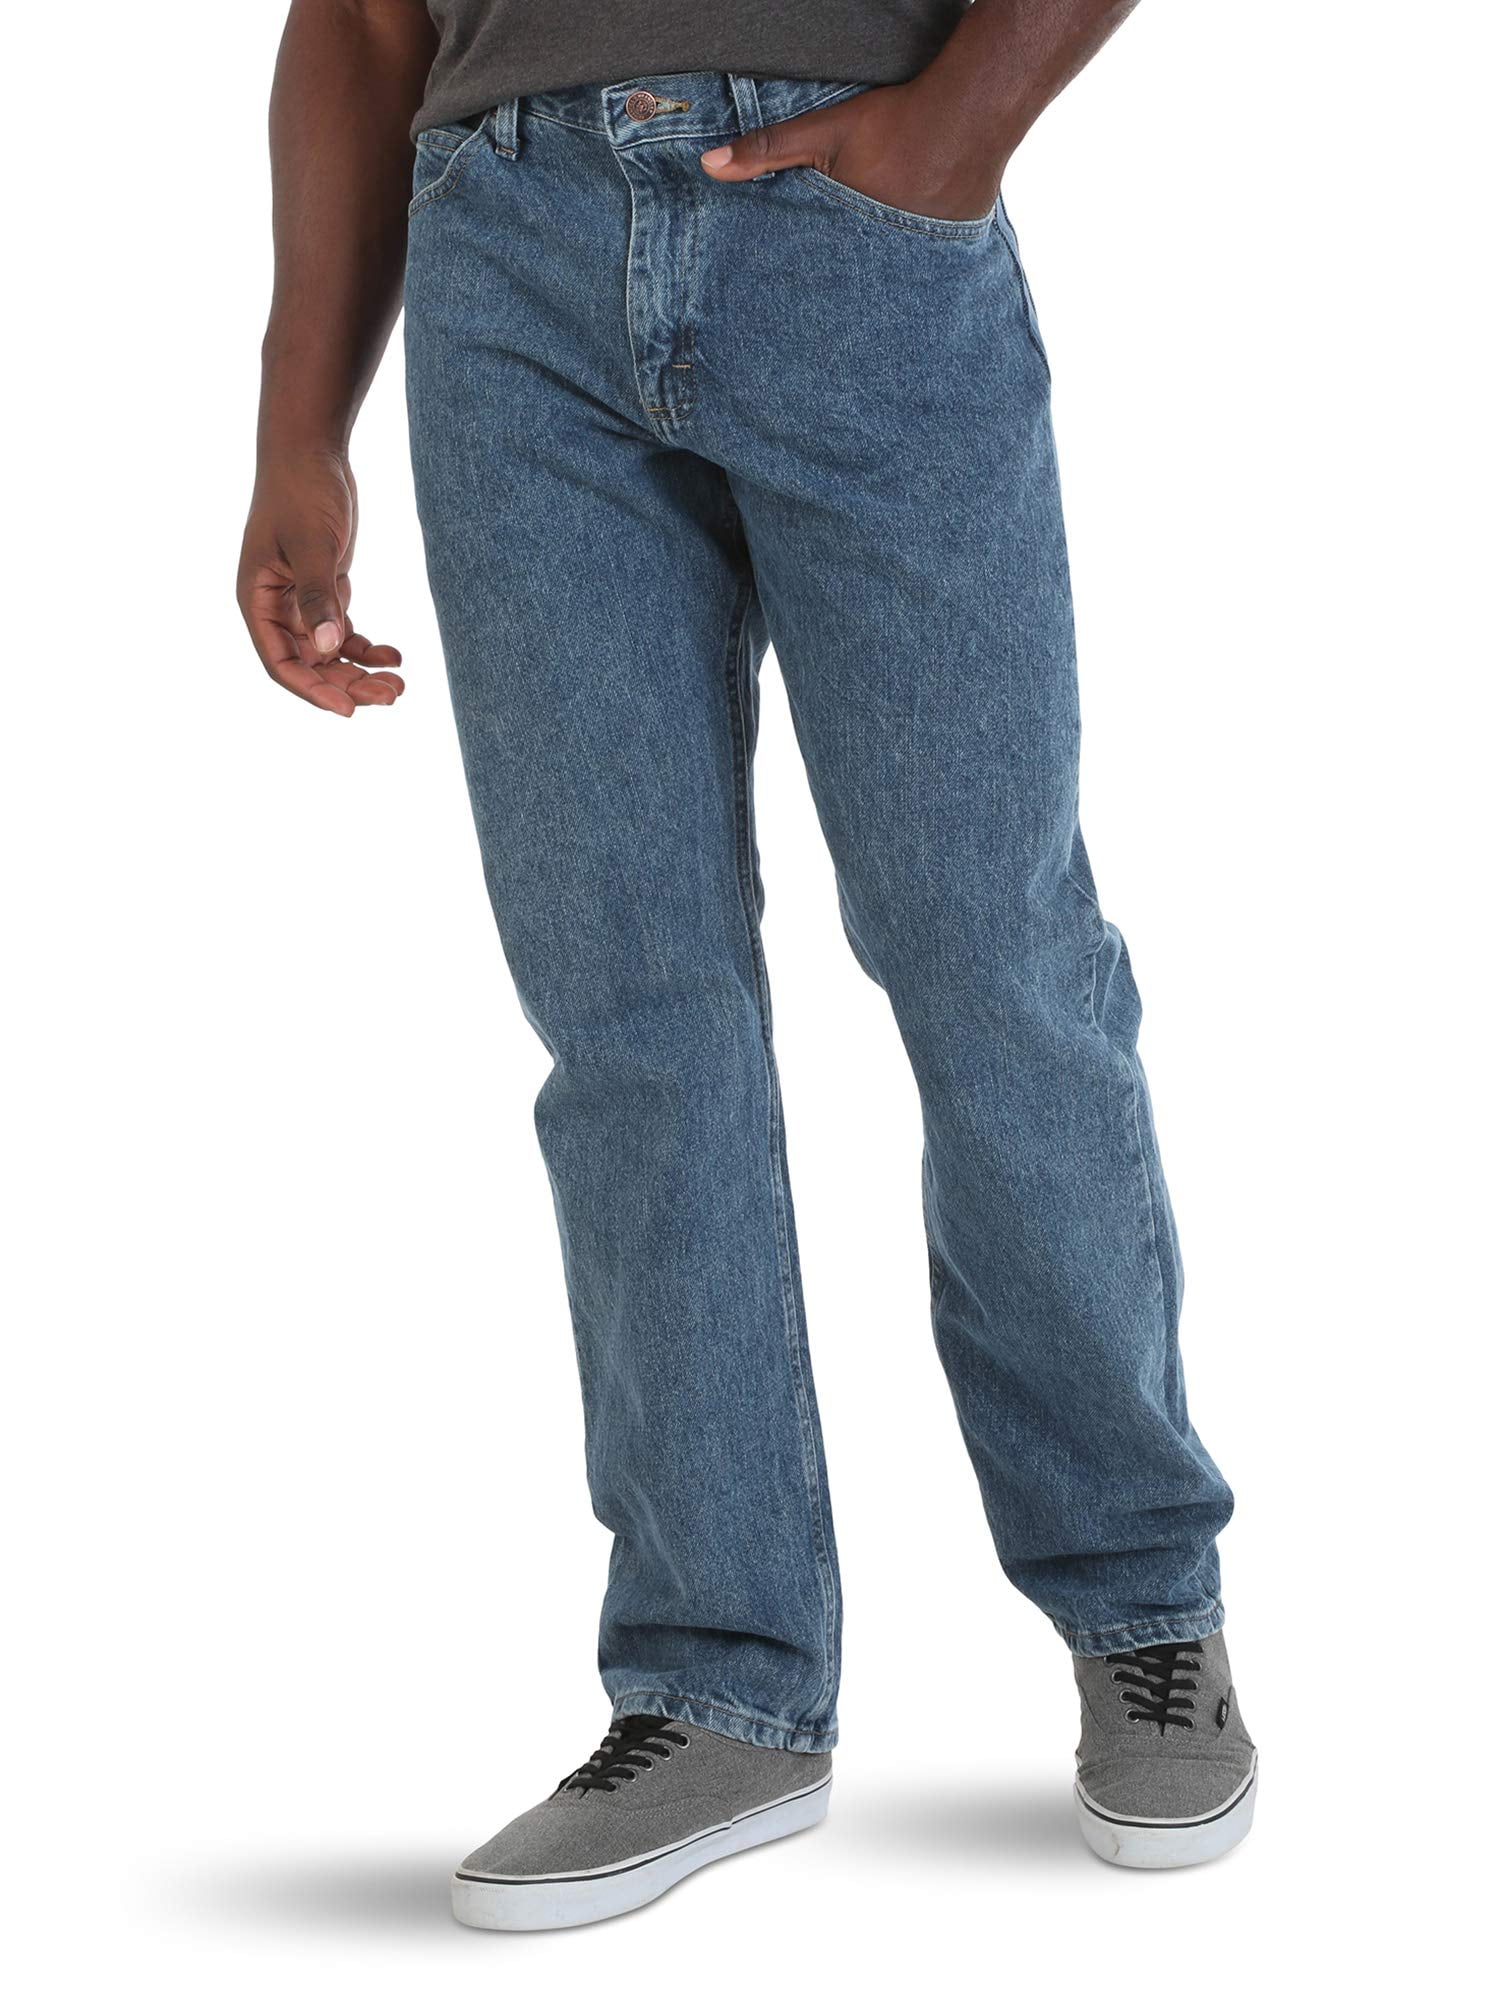 Außer Atem Gegenstand Sichtbar jeans 46 Studie Verstrickung Höhe